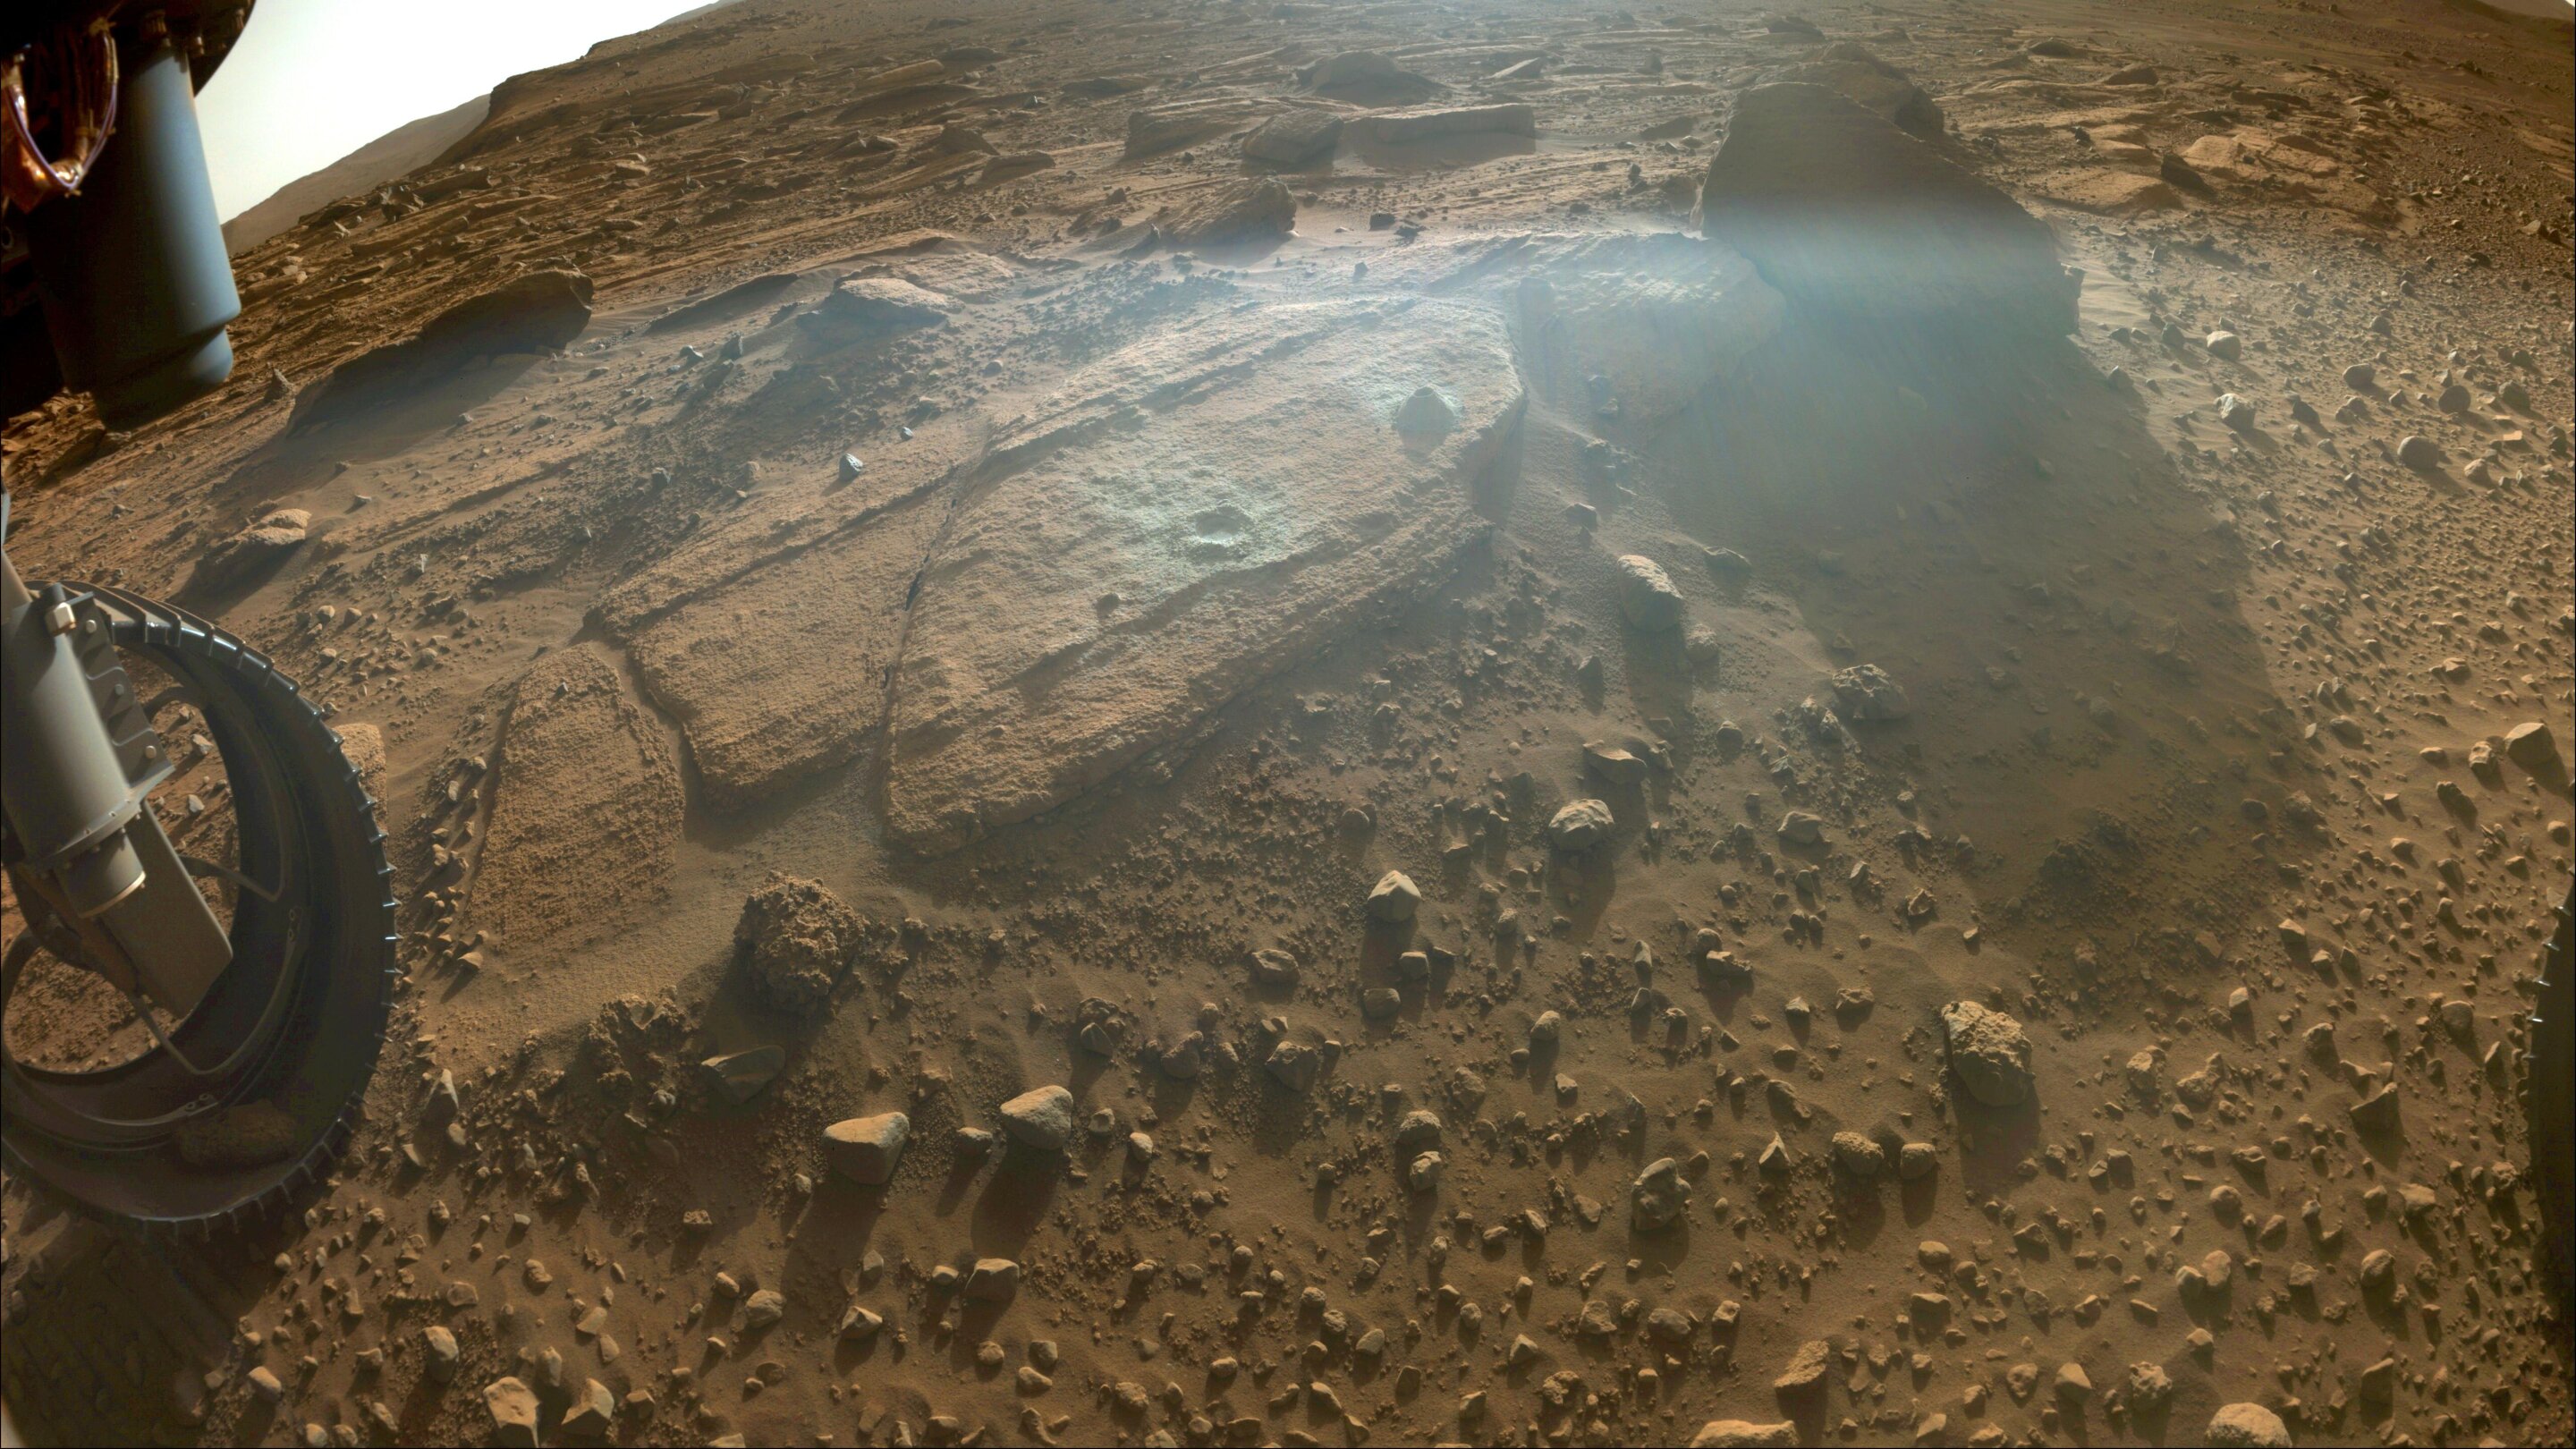 Mars, Berea outcrop